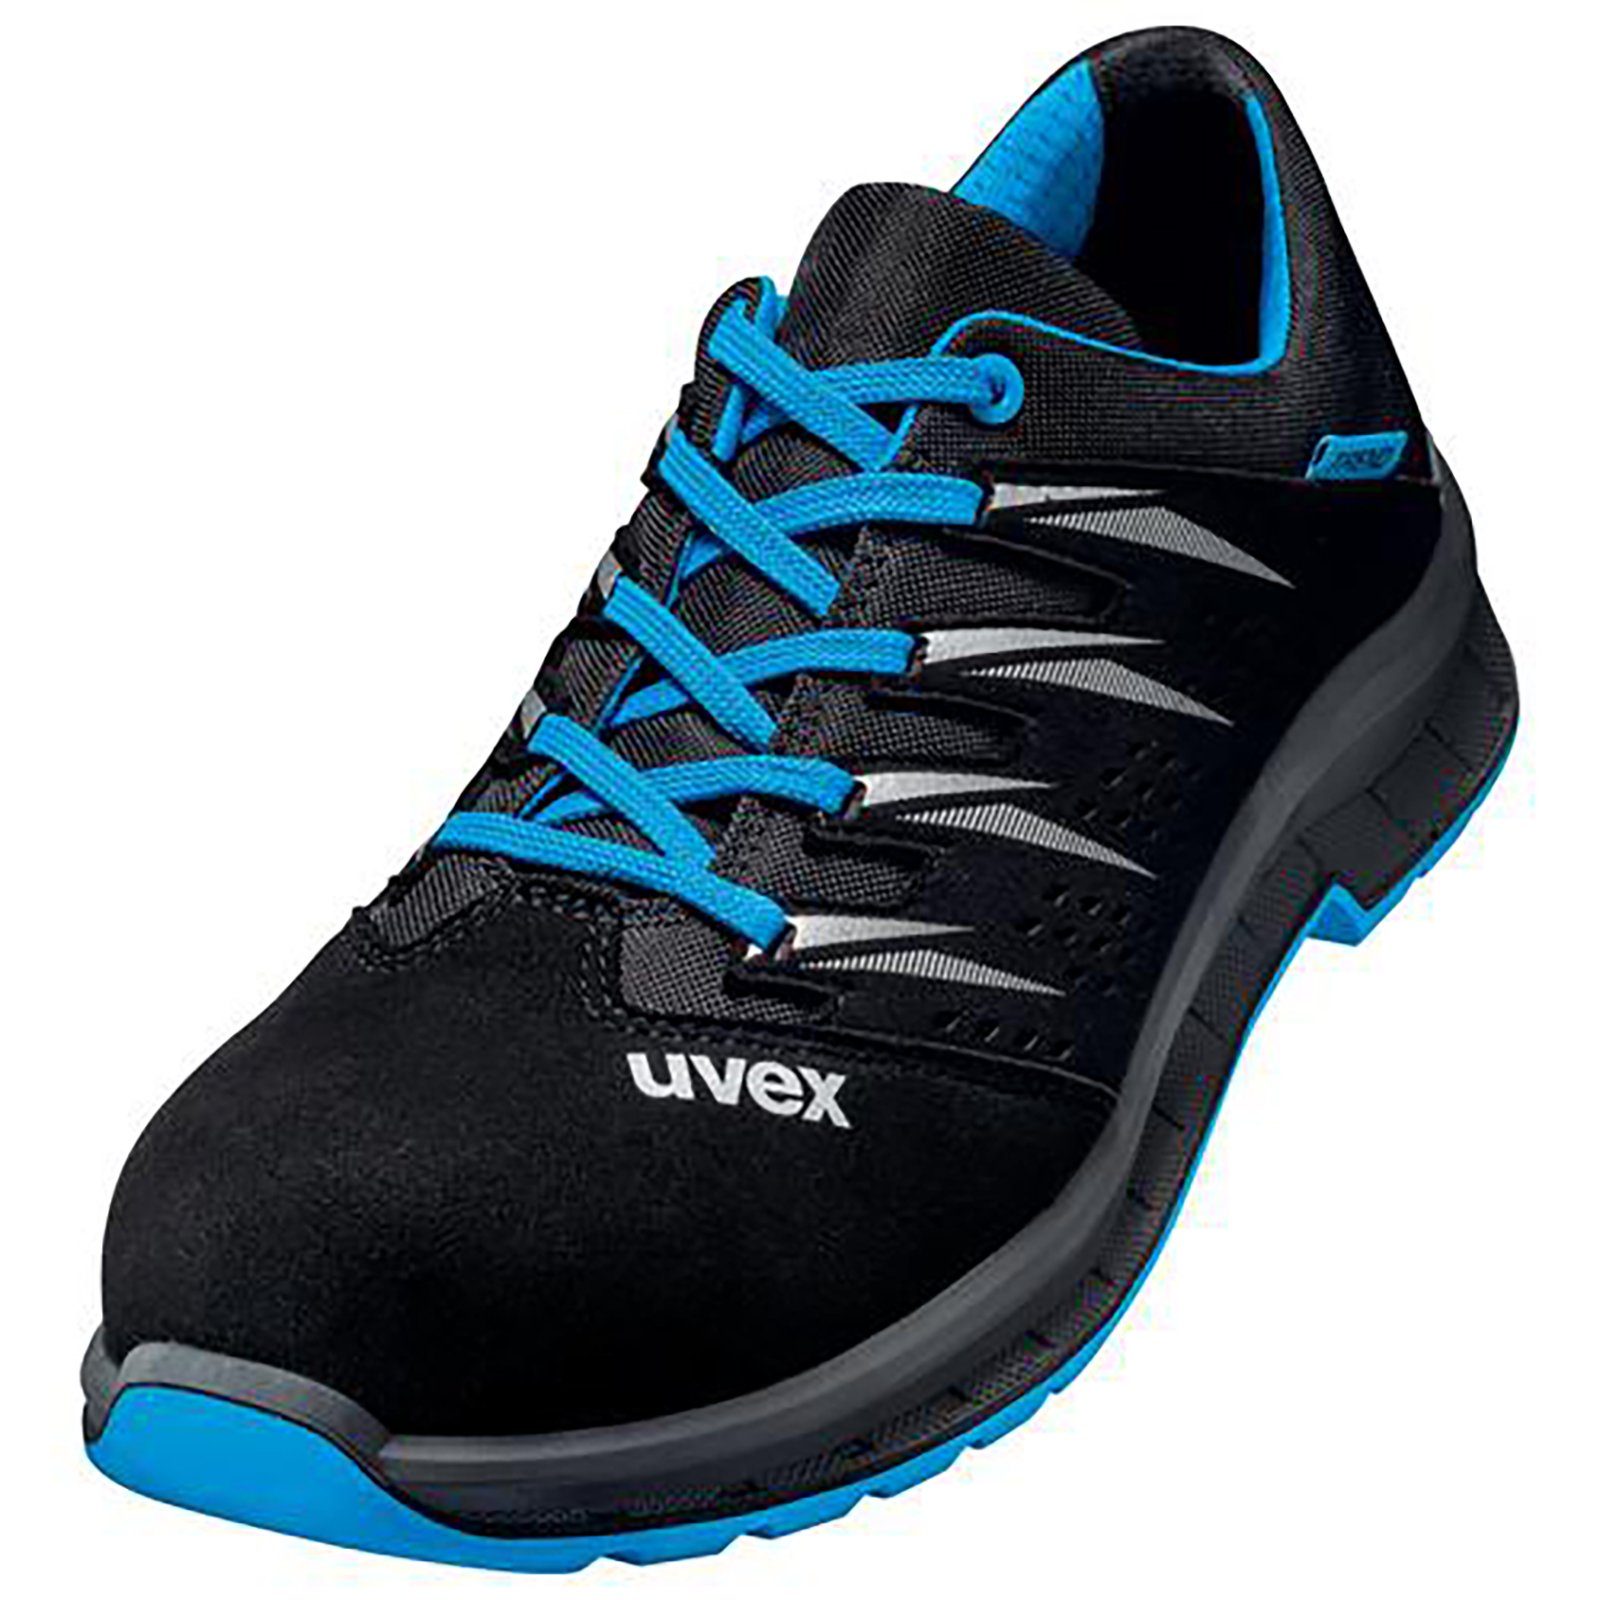 Uvex 2 trend Halbschuhe S1P blau, schwarz Weite 10 Sicherheitsschuh